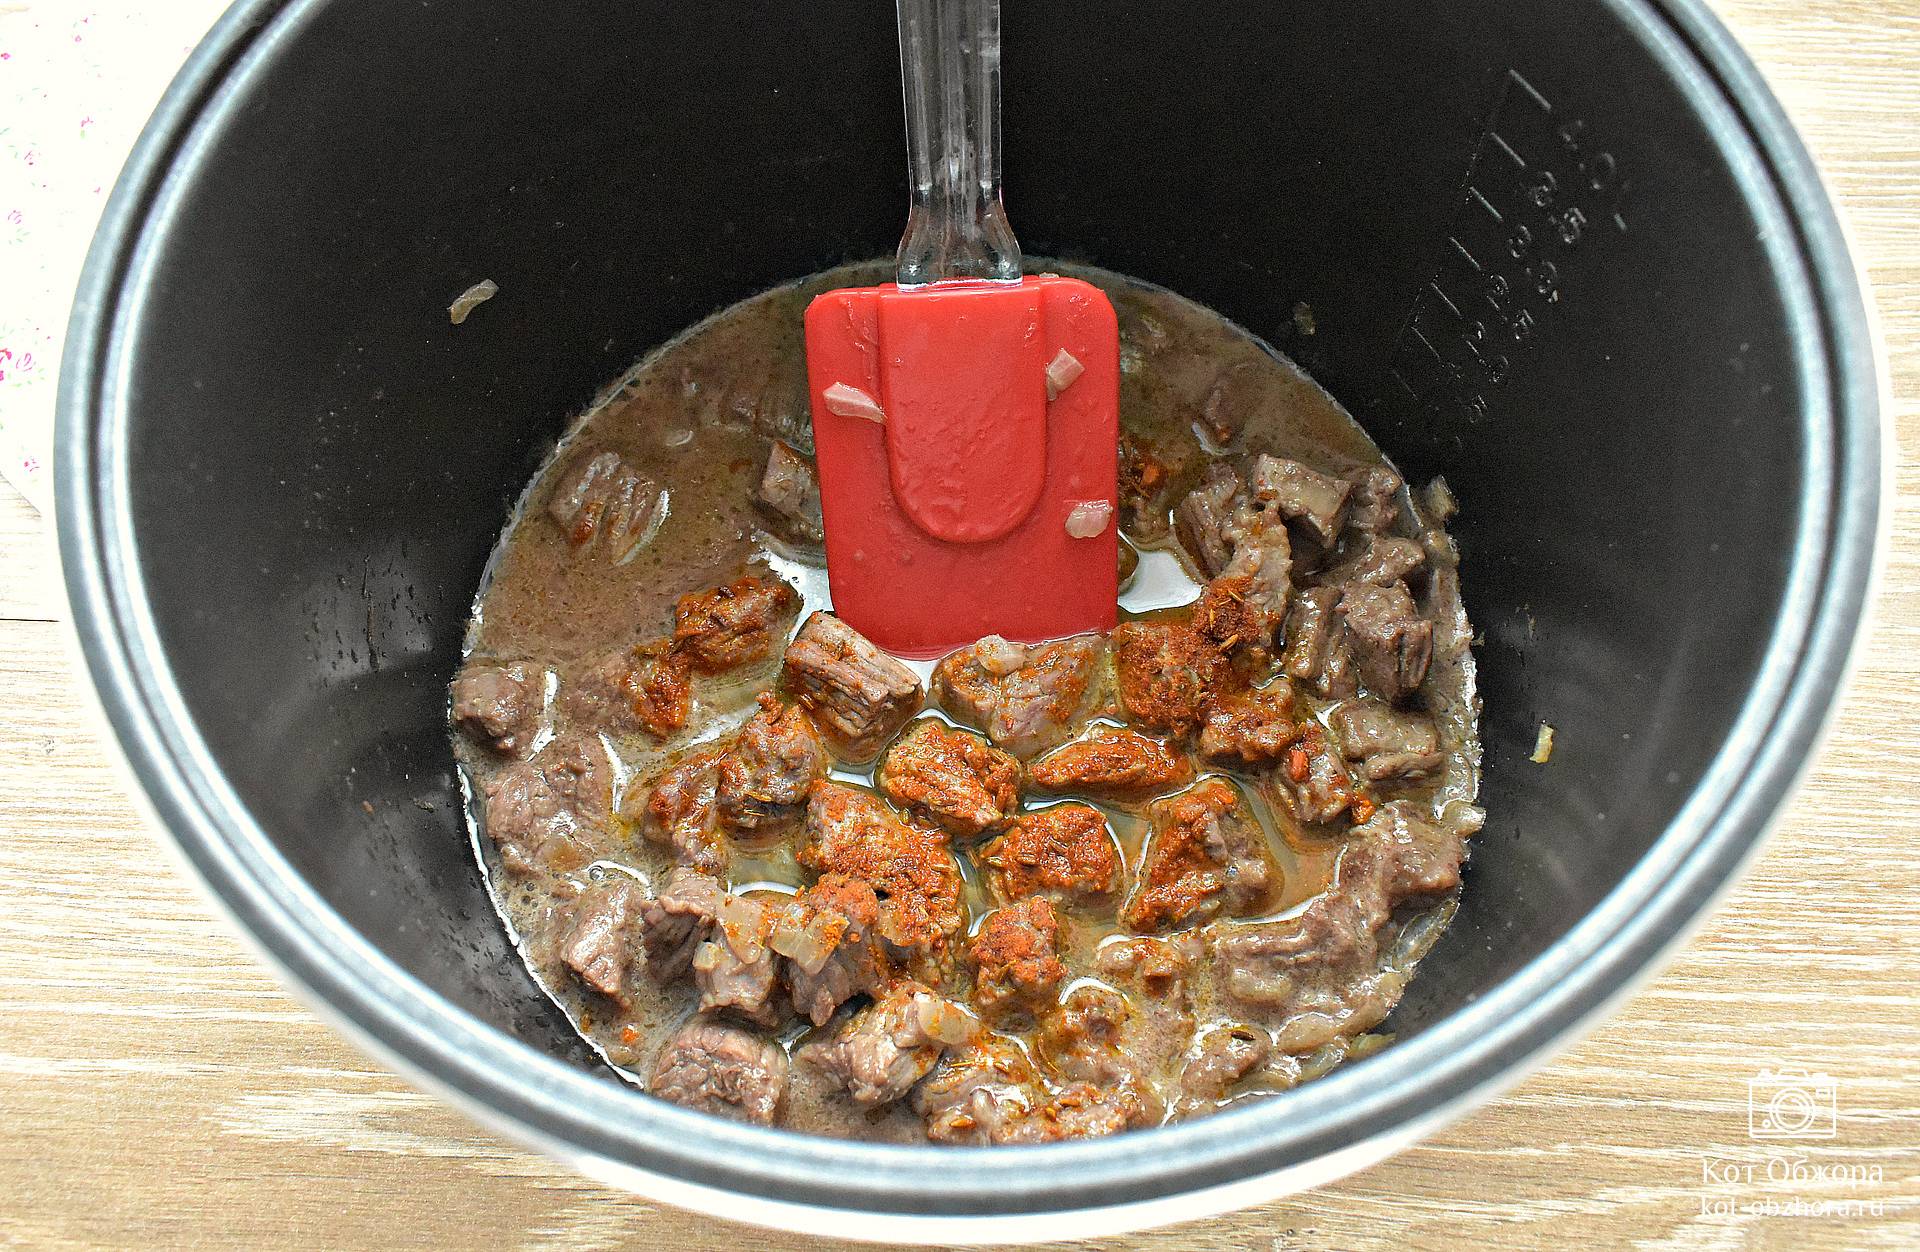 Рецепт вкуснейшего гуляша из говядины, приготовленного в мультиварке Редмонд